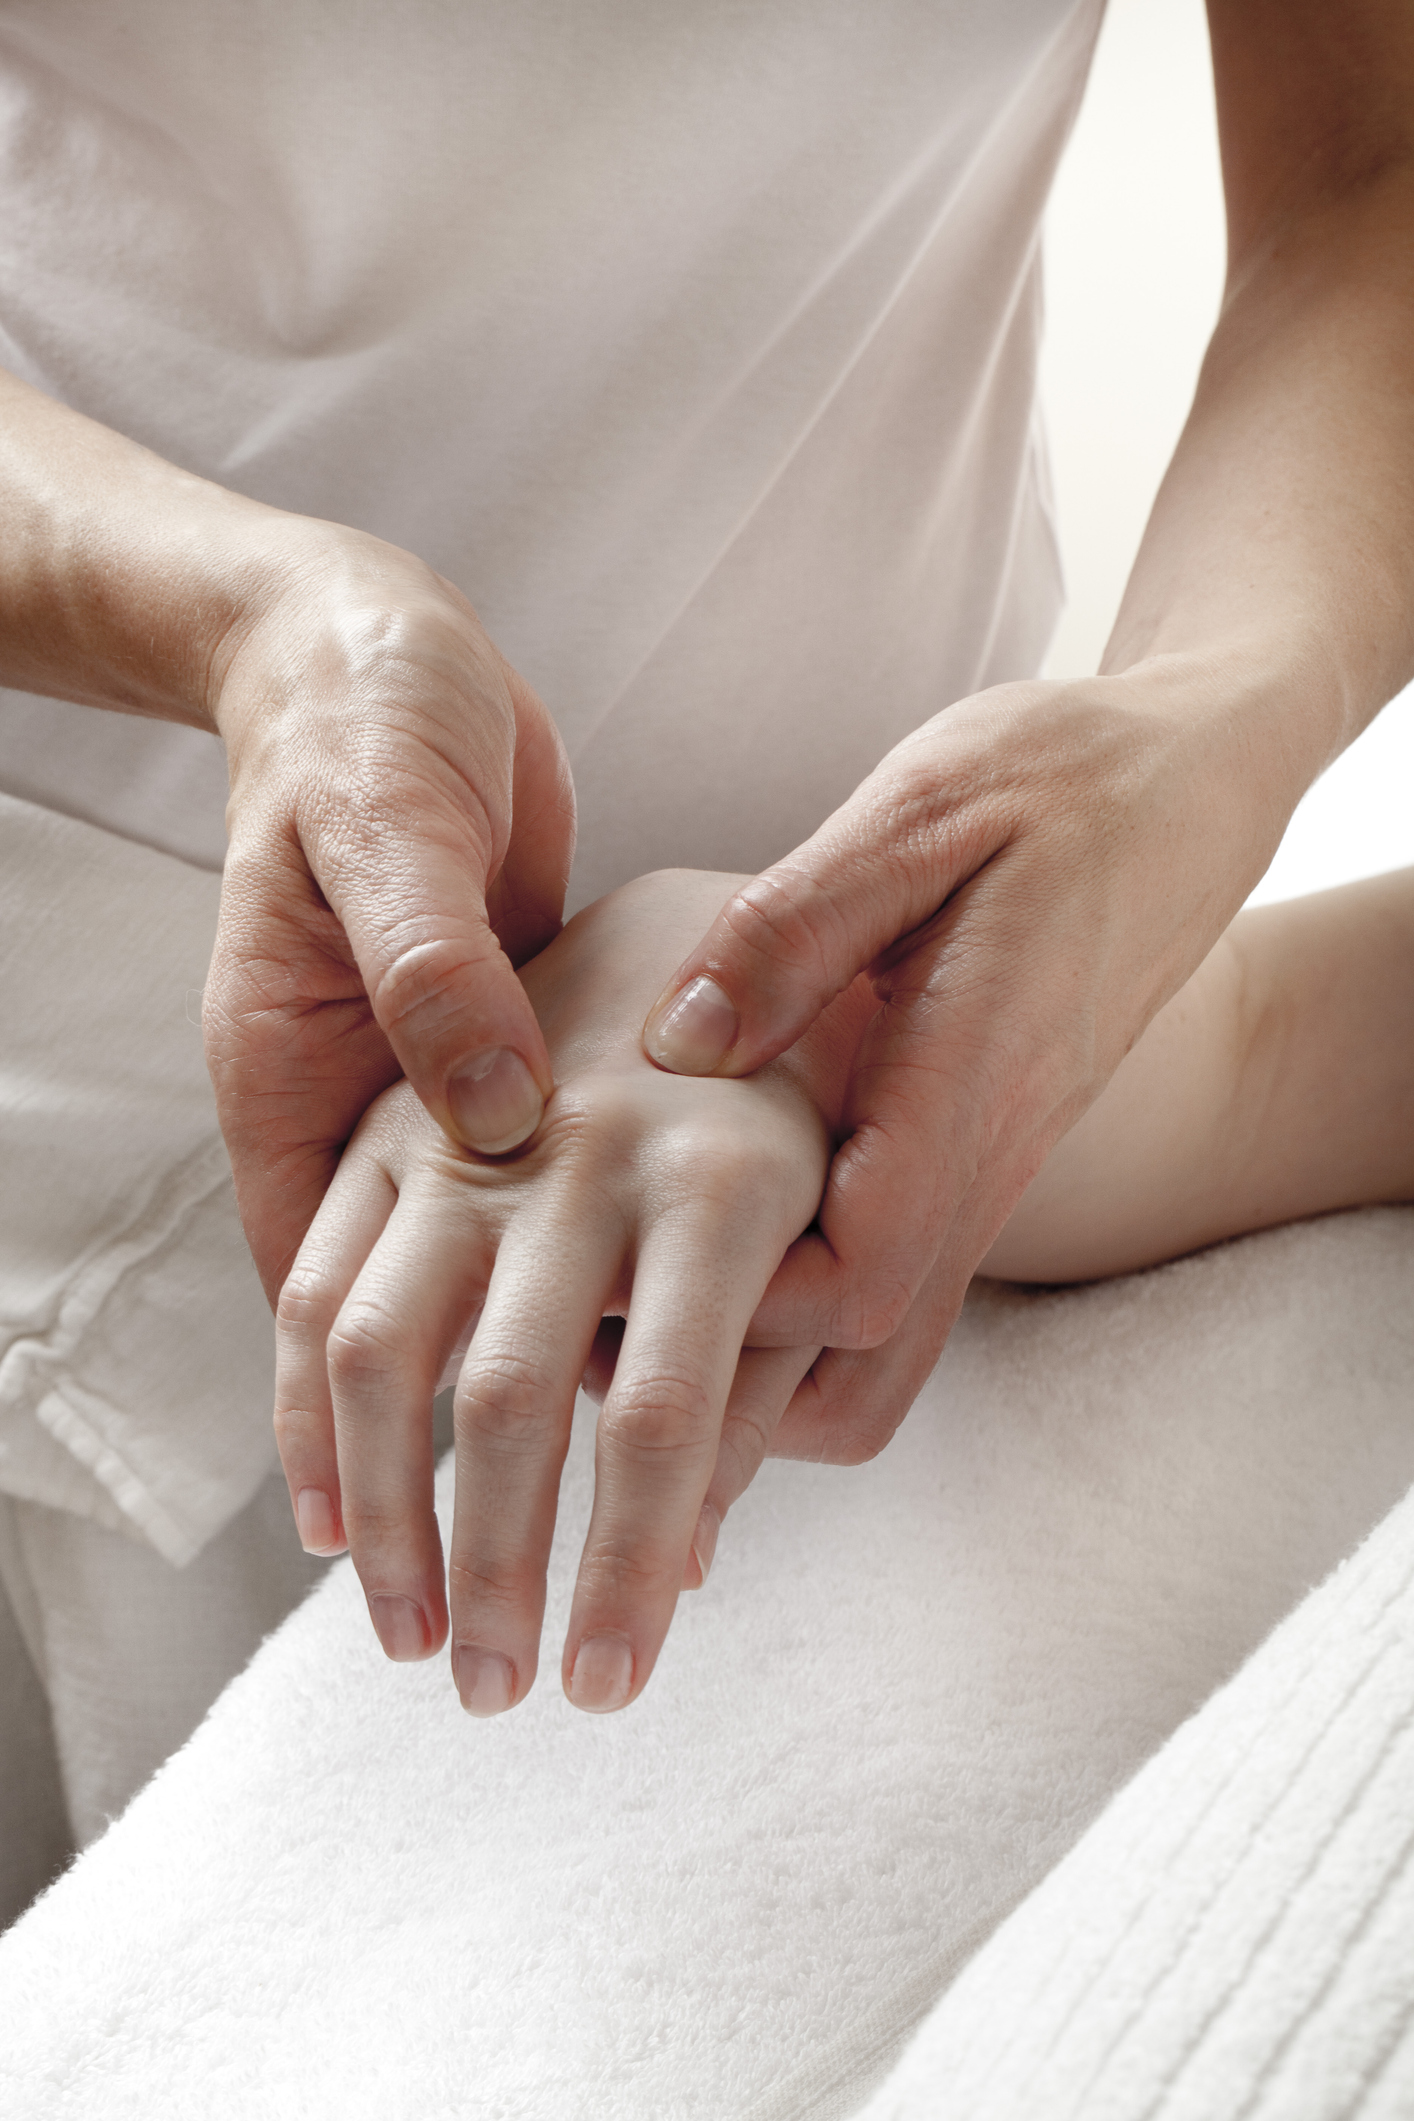 artrita articulațiilor interfalangiene ale tratamentului mâinilor